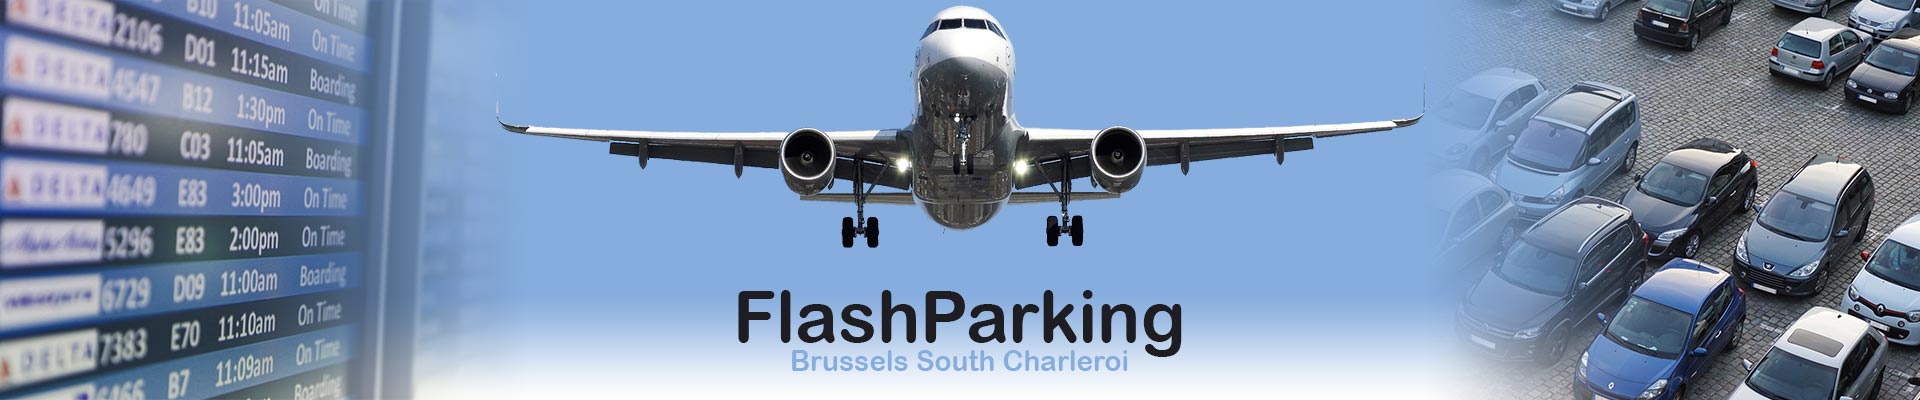 Flash parking aéroport de Parking Aéroport Charleroi